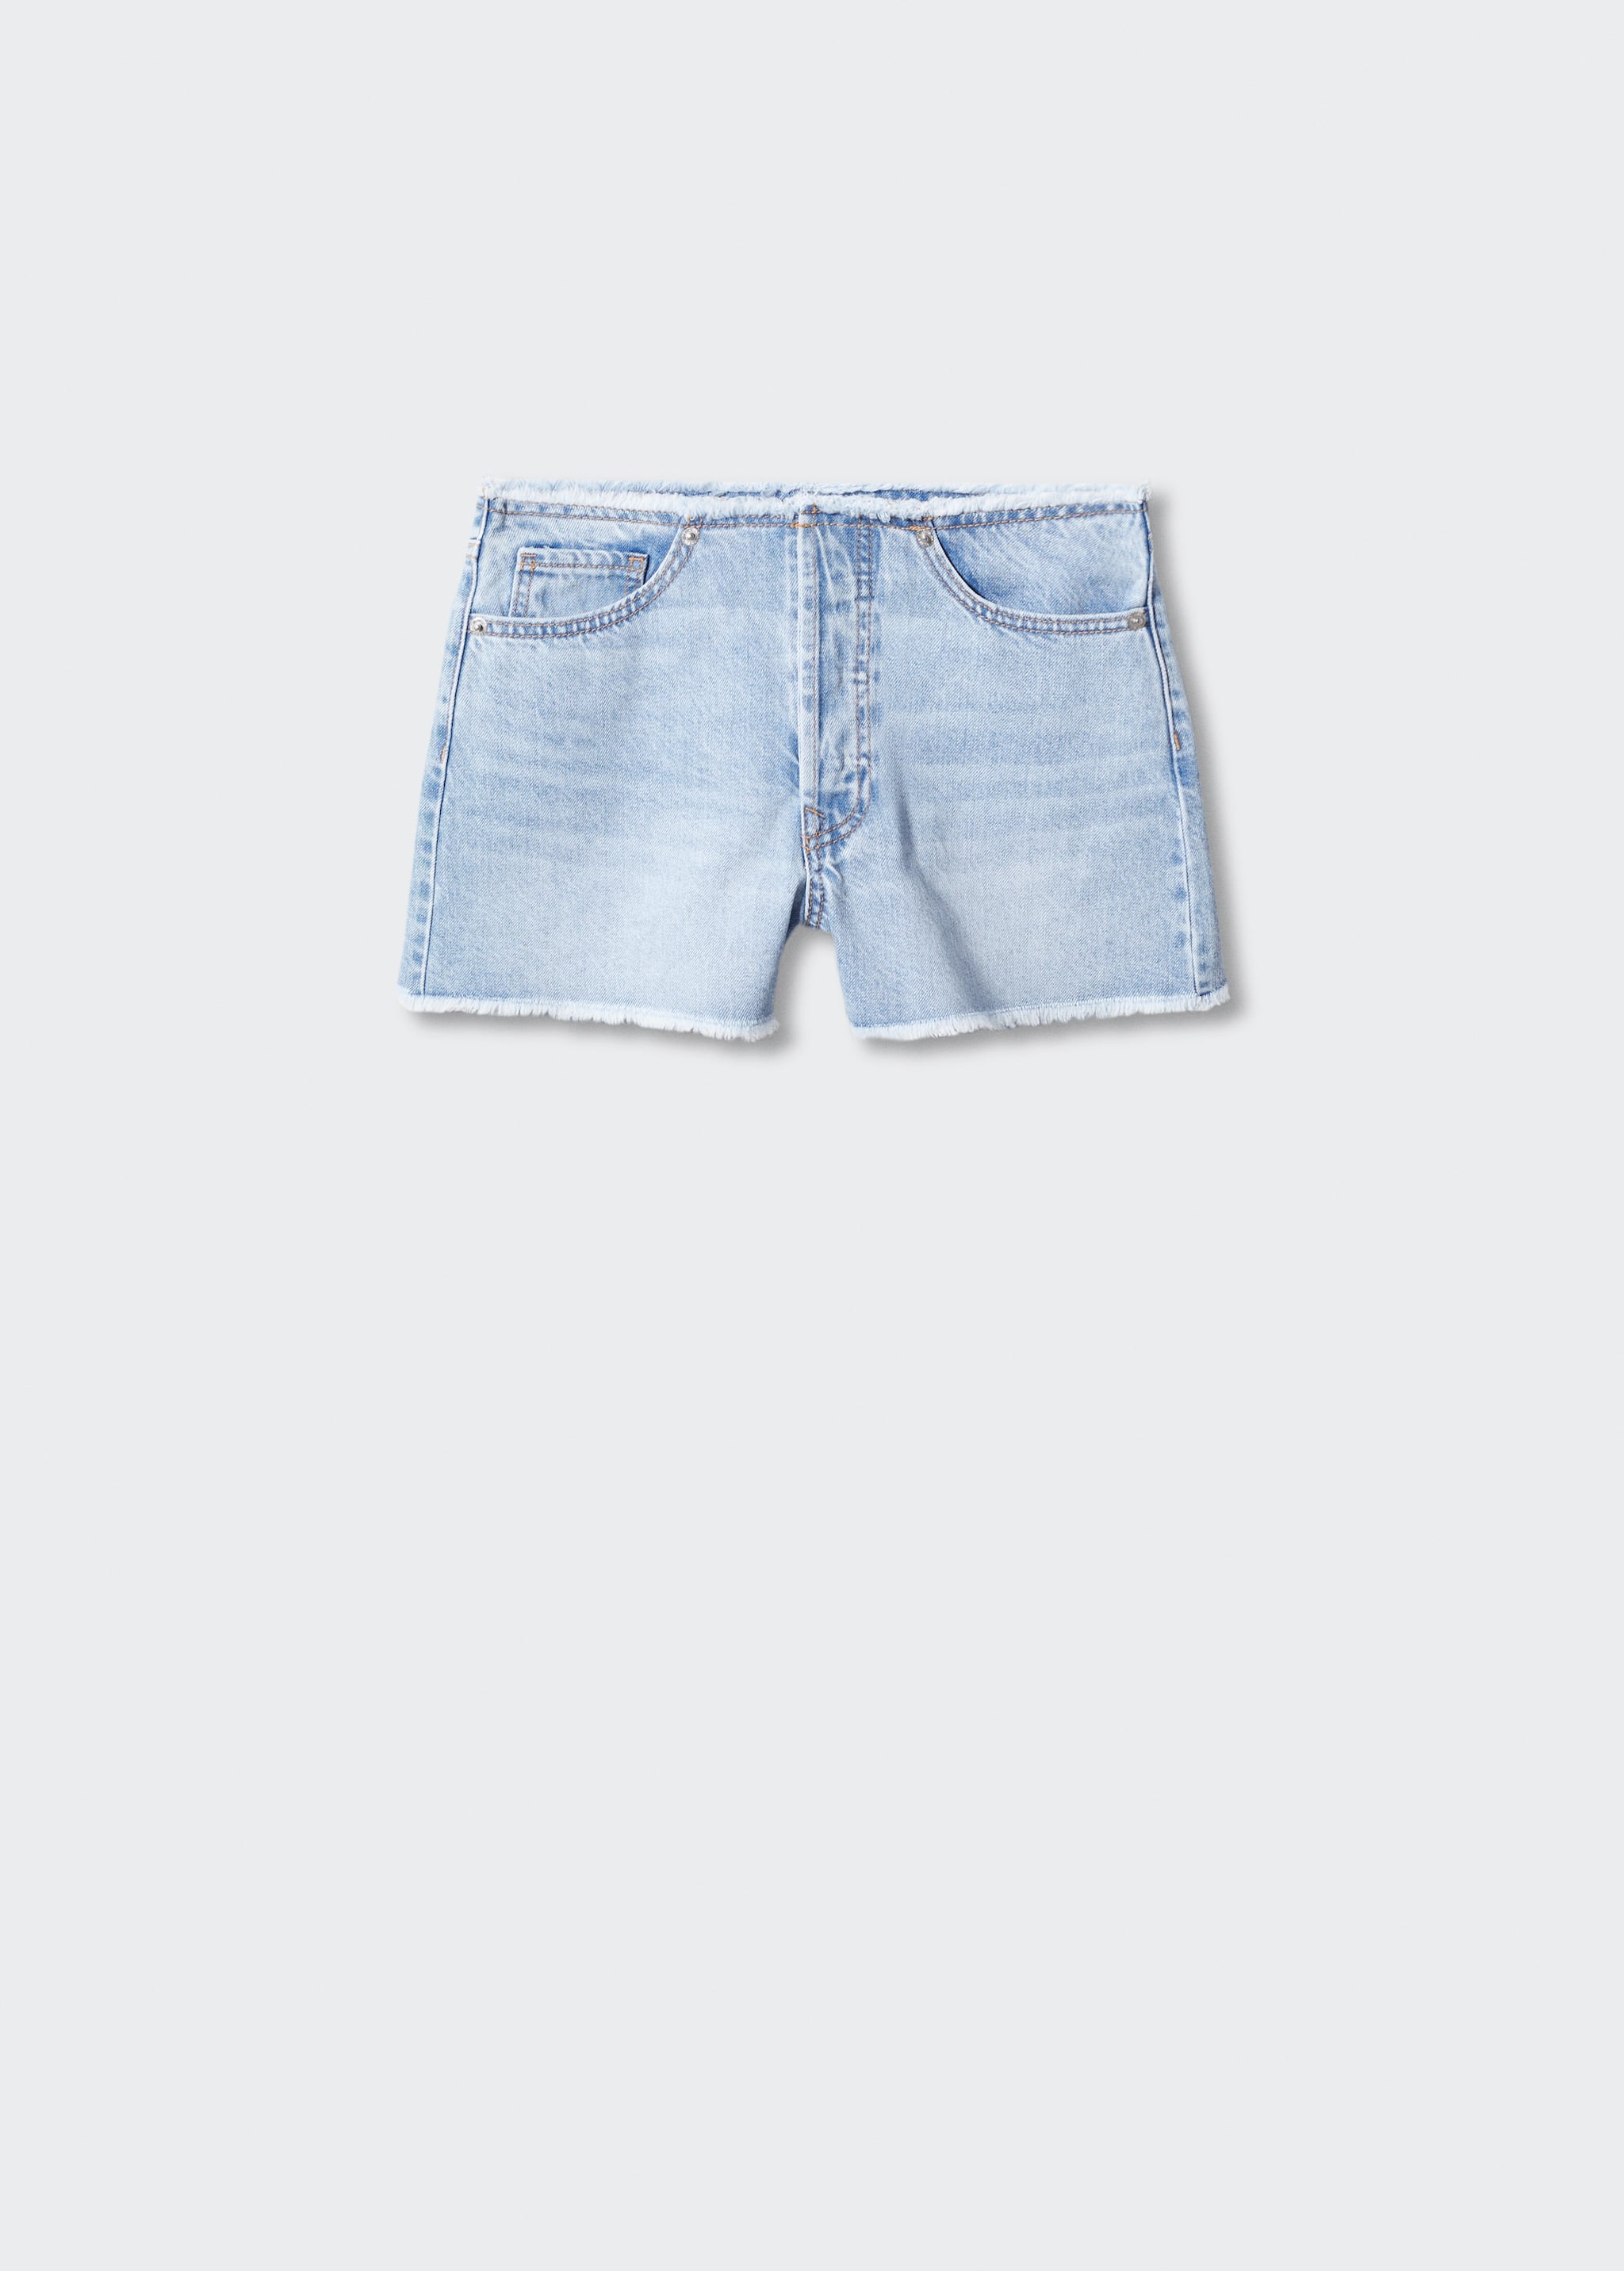 Short jean taille normale - Article sans modèle